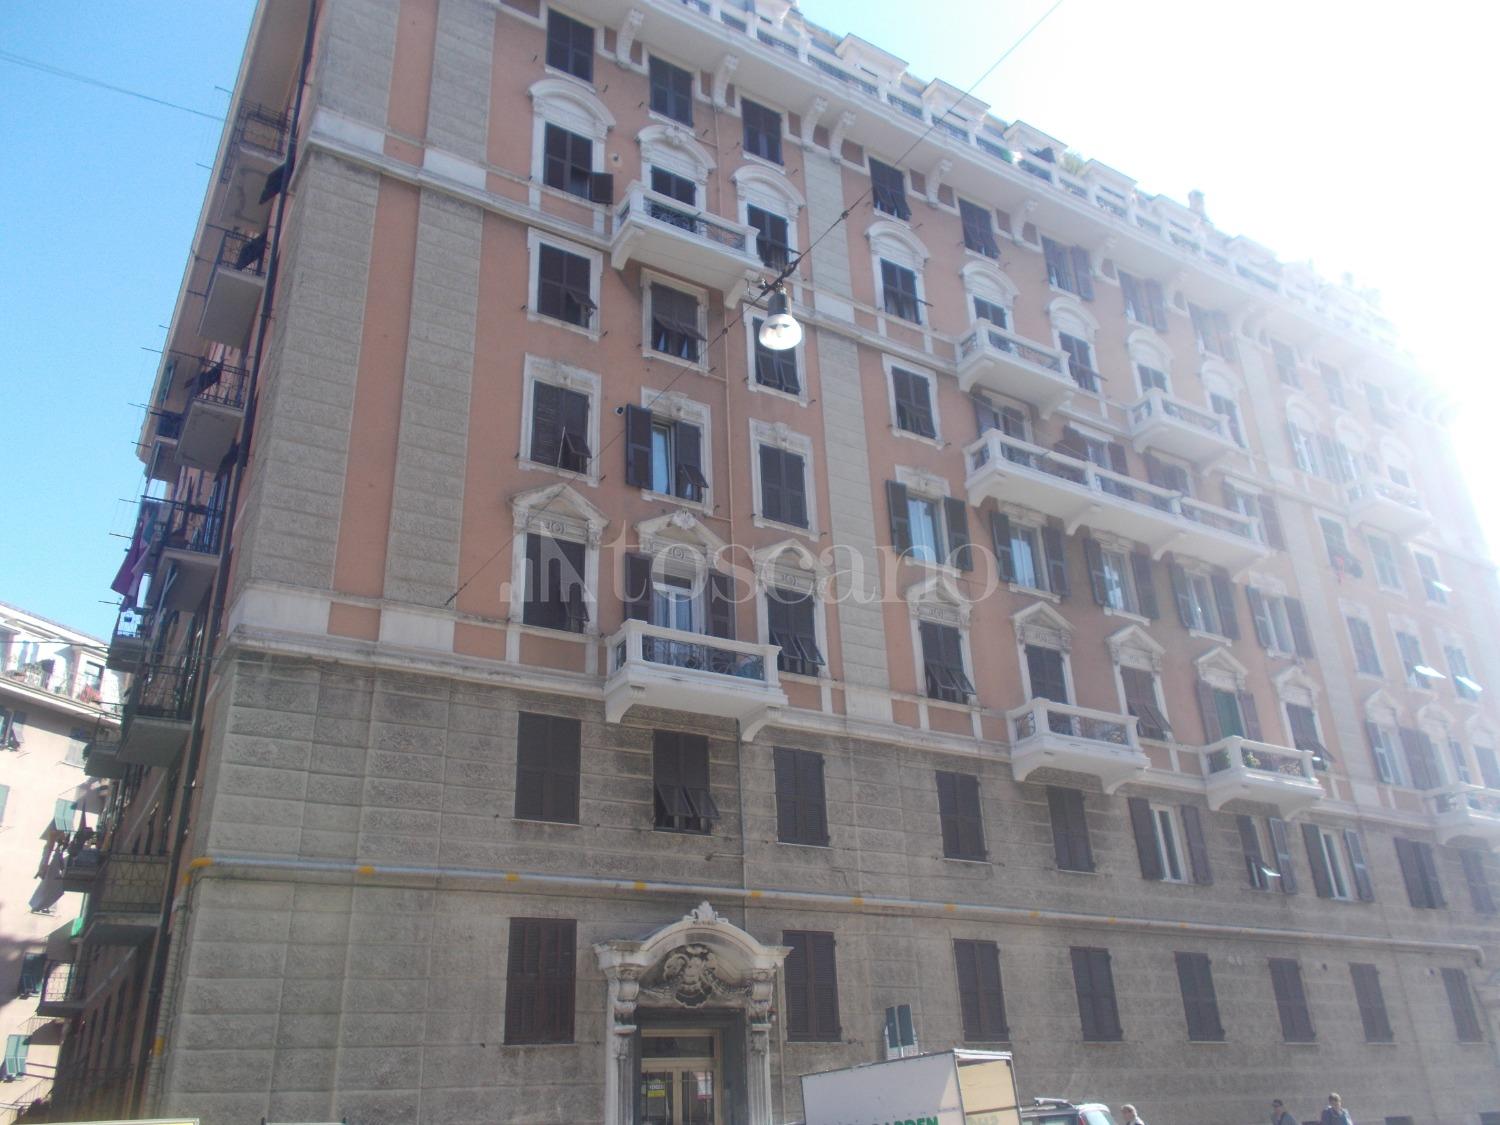 Vendita Casa A Genova In Via Monticelli Marassi 105 2019 Toscano